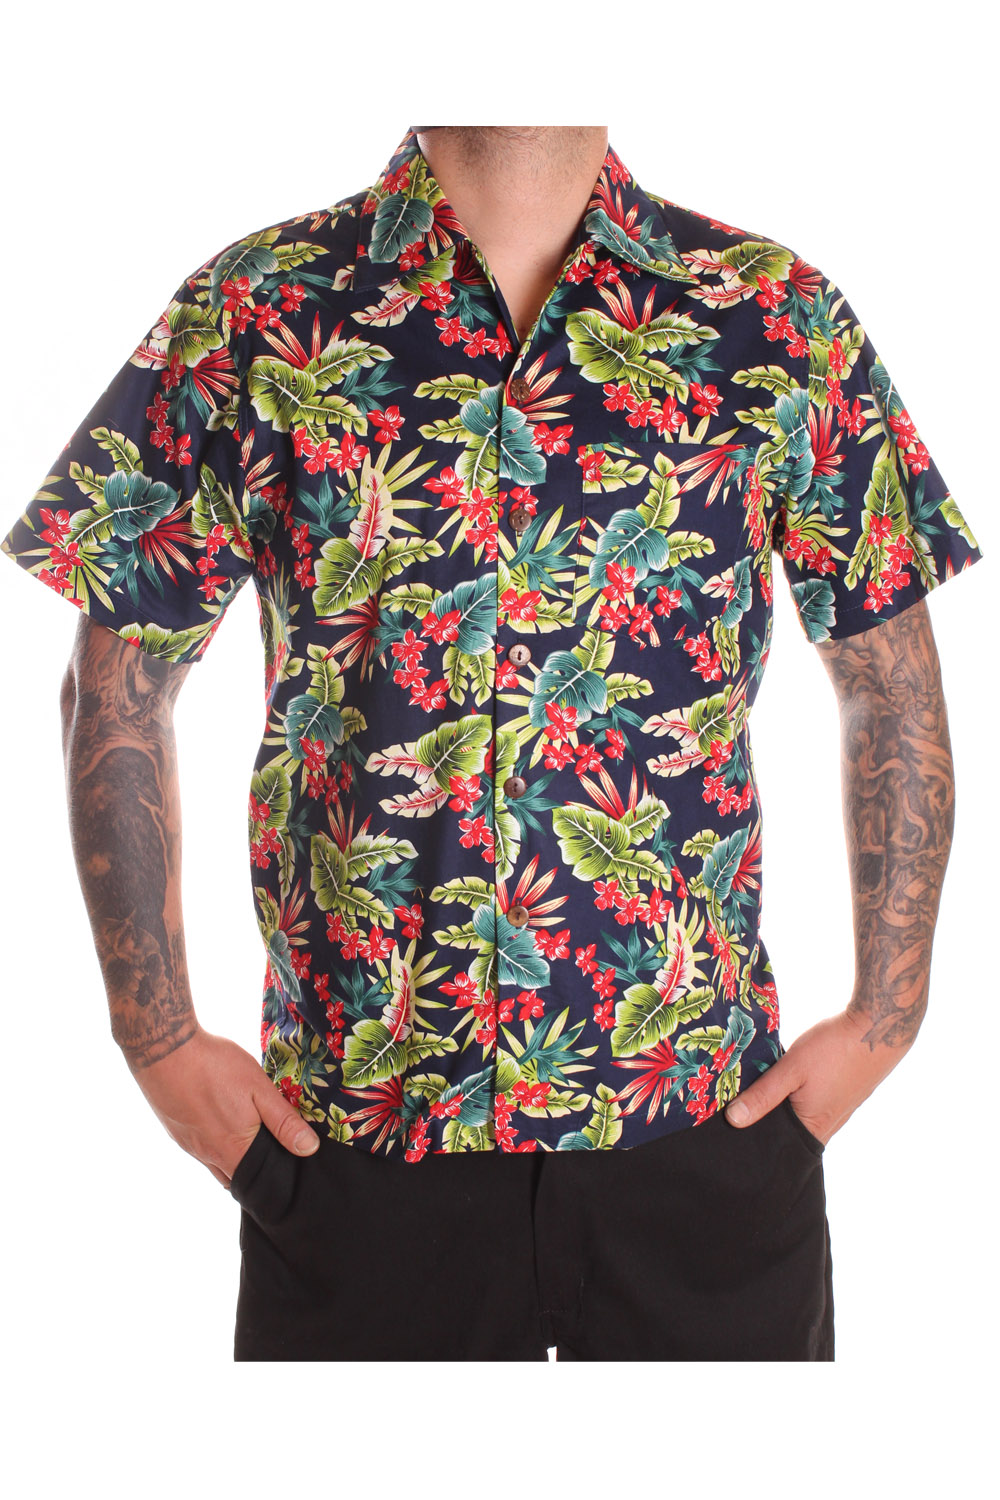 retro Hawaii Blumen Hibiskus rockabilly Hawaiihemd Shirt blau-rot a